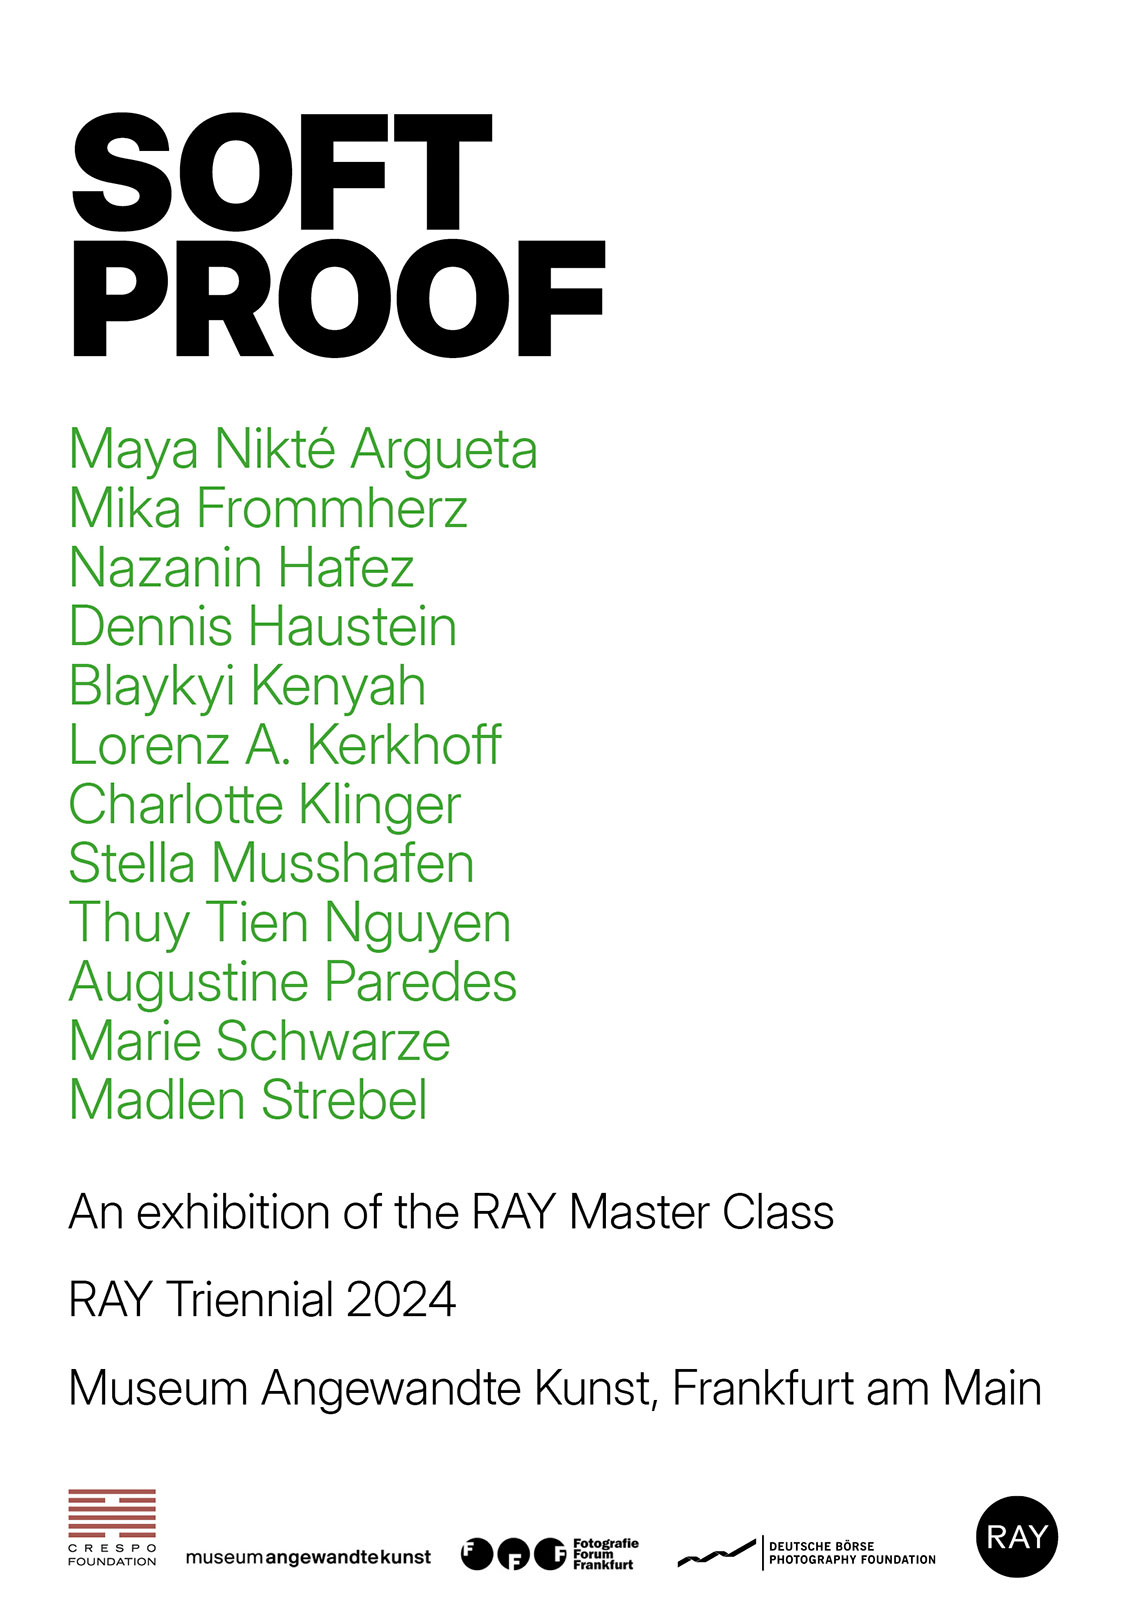 “SOFT PROOF”, Ausstellung der RAY Master Class / RAY Triennale 2024 im Museum für Angewandte Kunst, Frankfurt am Main